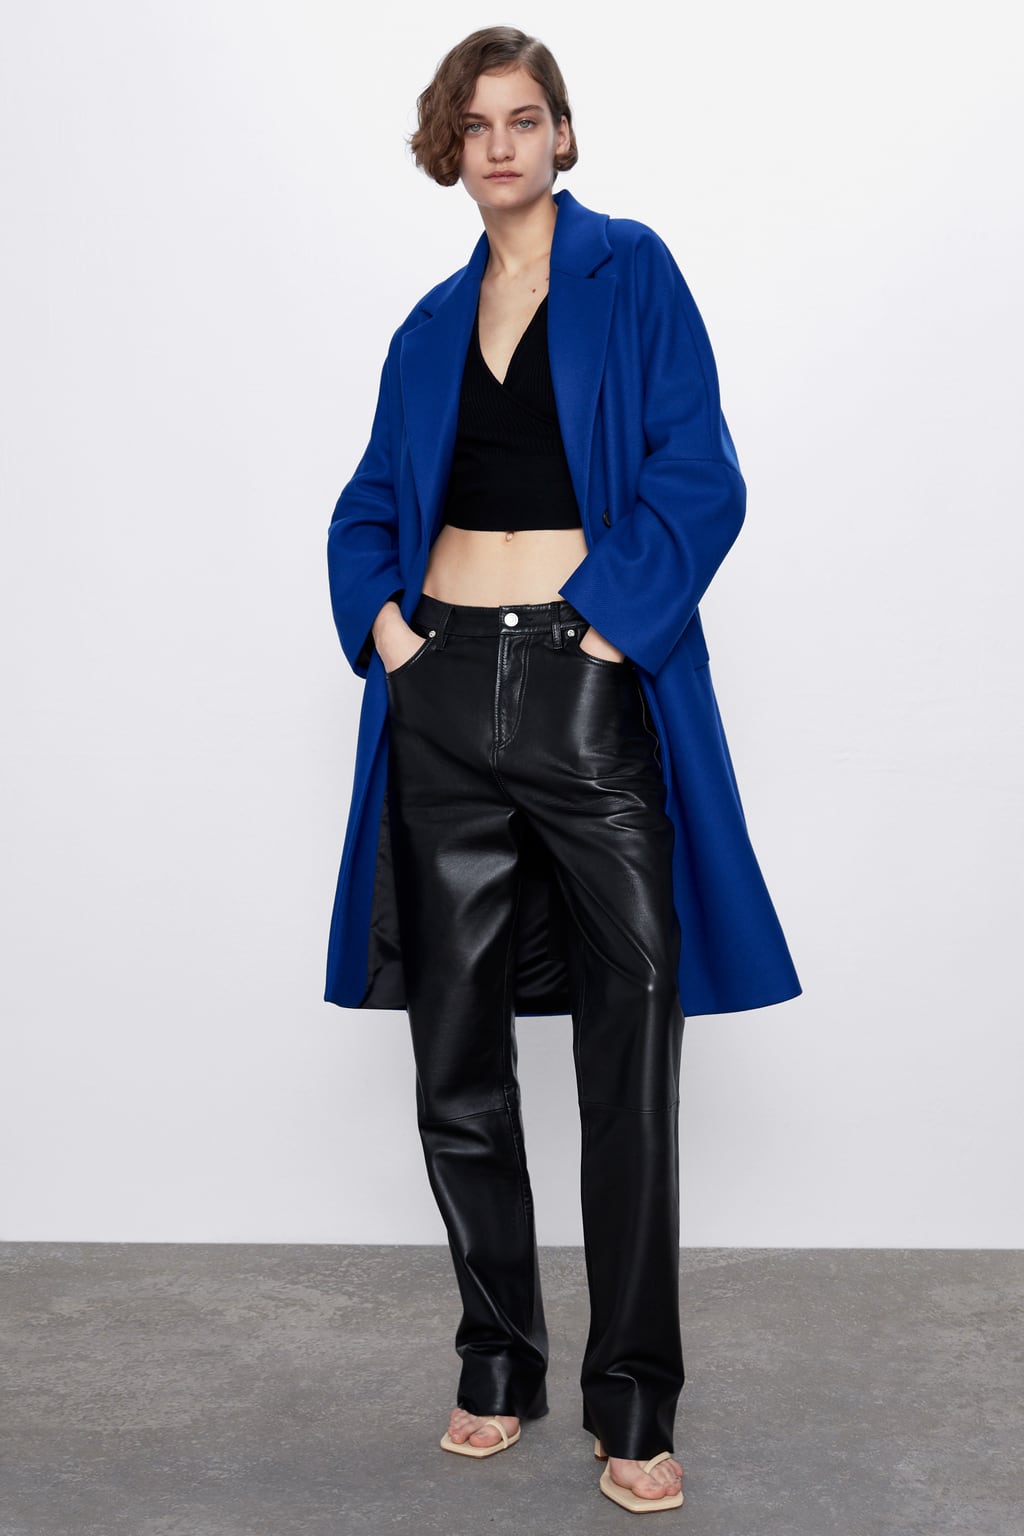 Zara blue coat